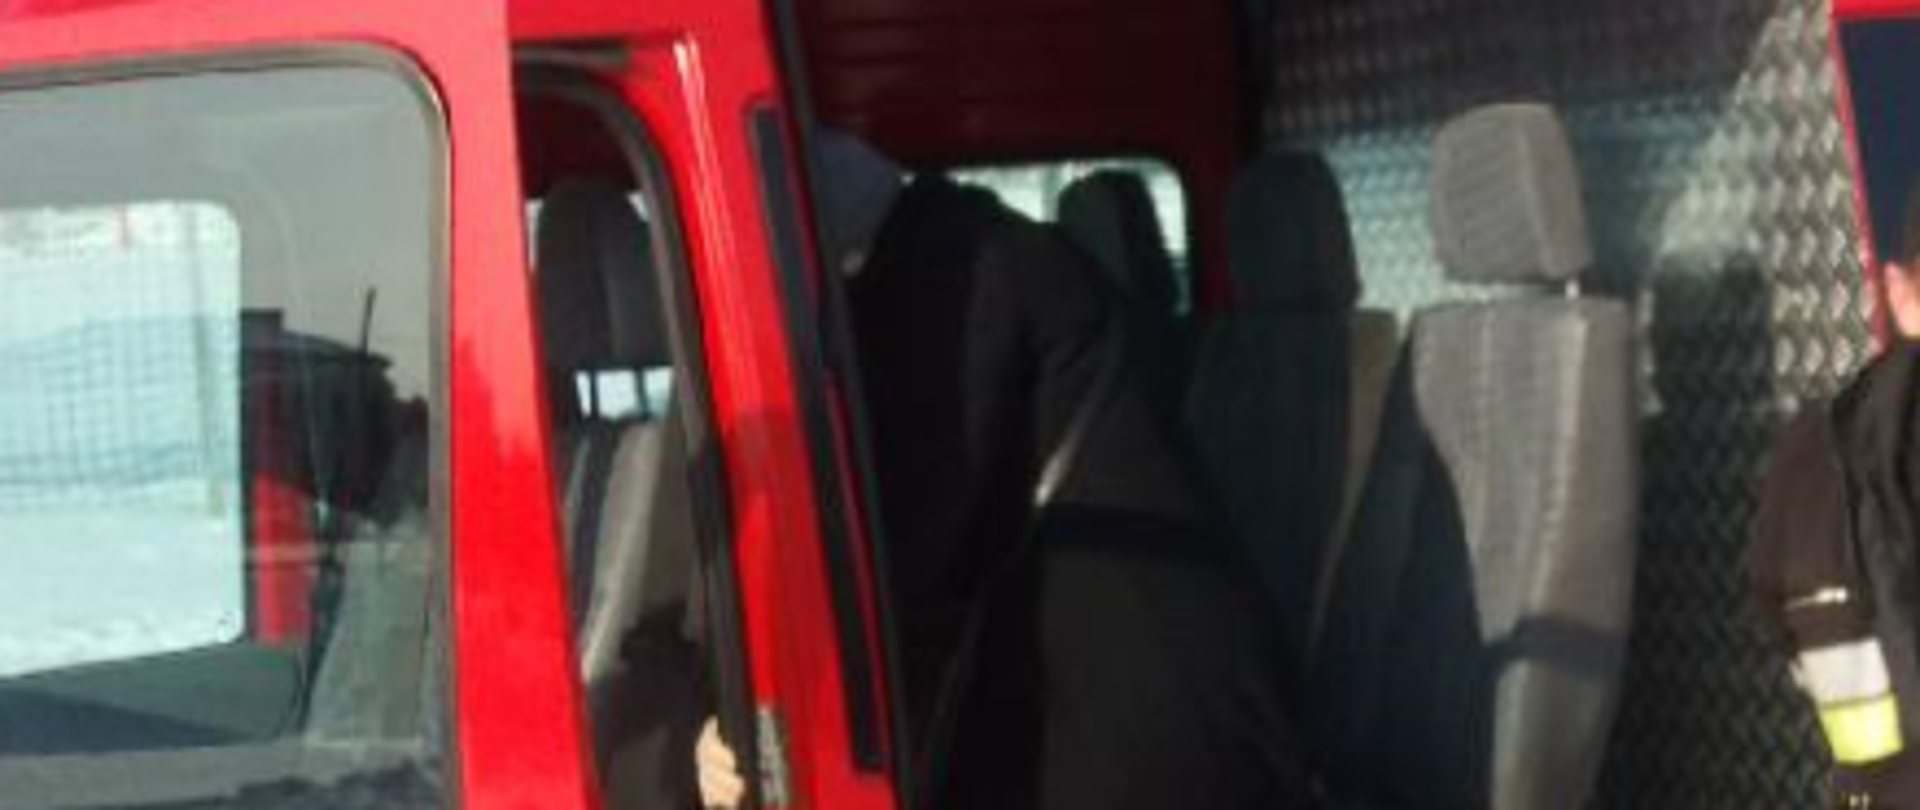 Na zdjęciu widać samochód pożarniczy typu bus do którego wsiada kobieta. Tuż za nią znajduje się strażak.